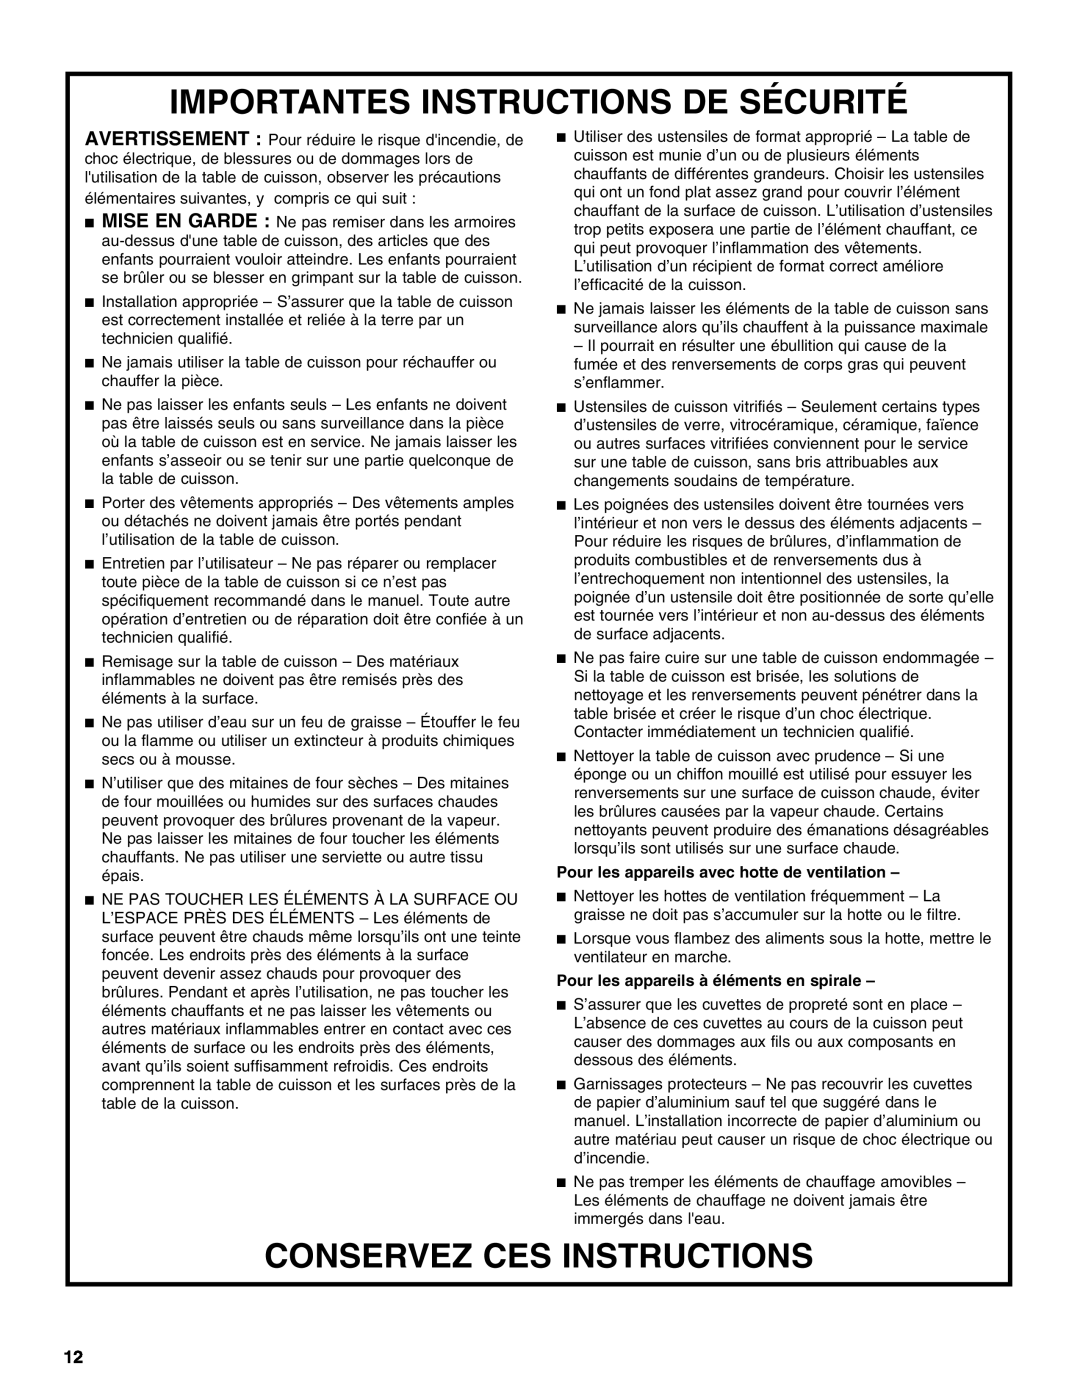 Whirlpool 8286619 manual Importantes Instructions De Sécurité, Conservez Ces Instructions 